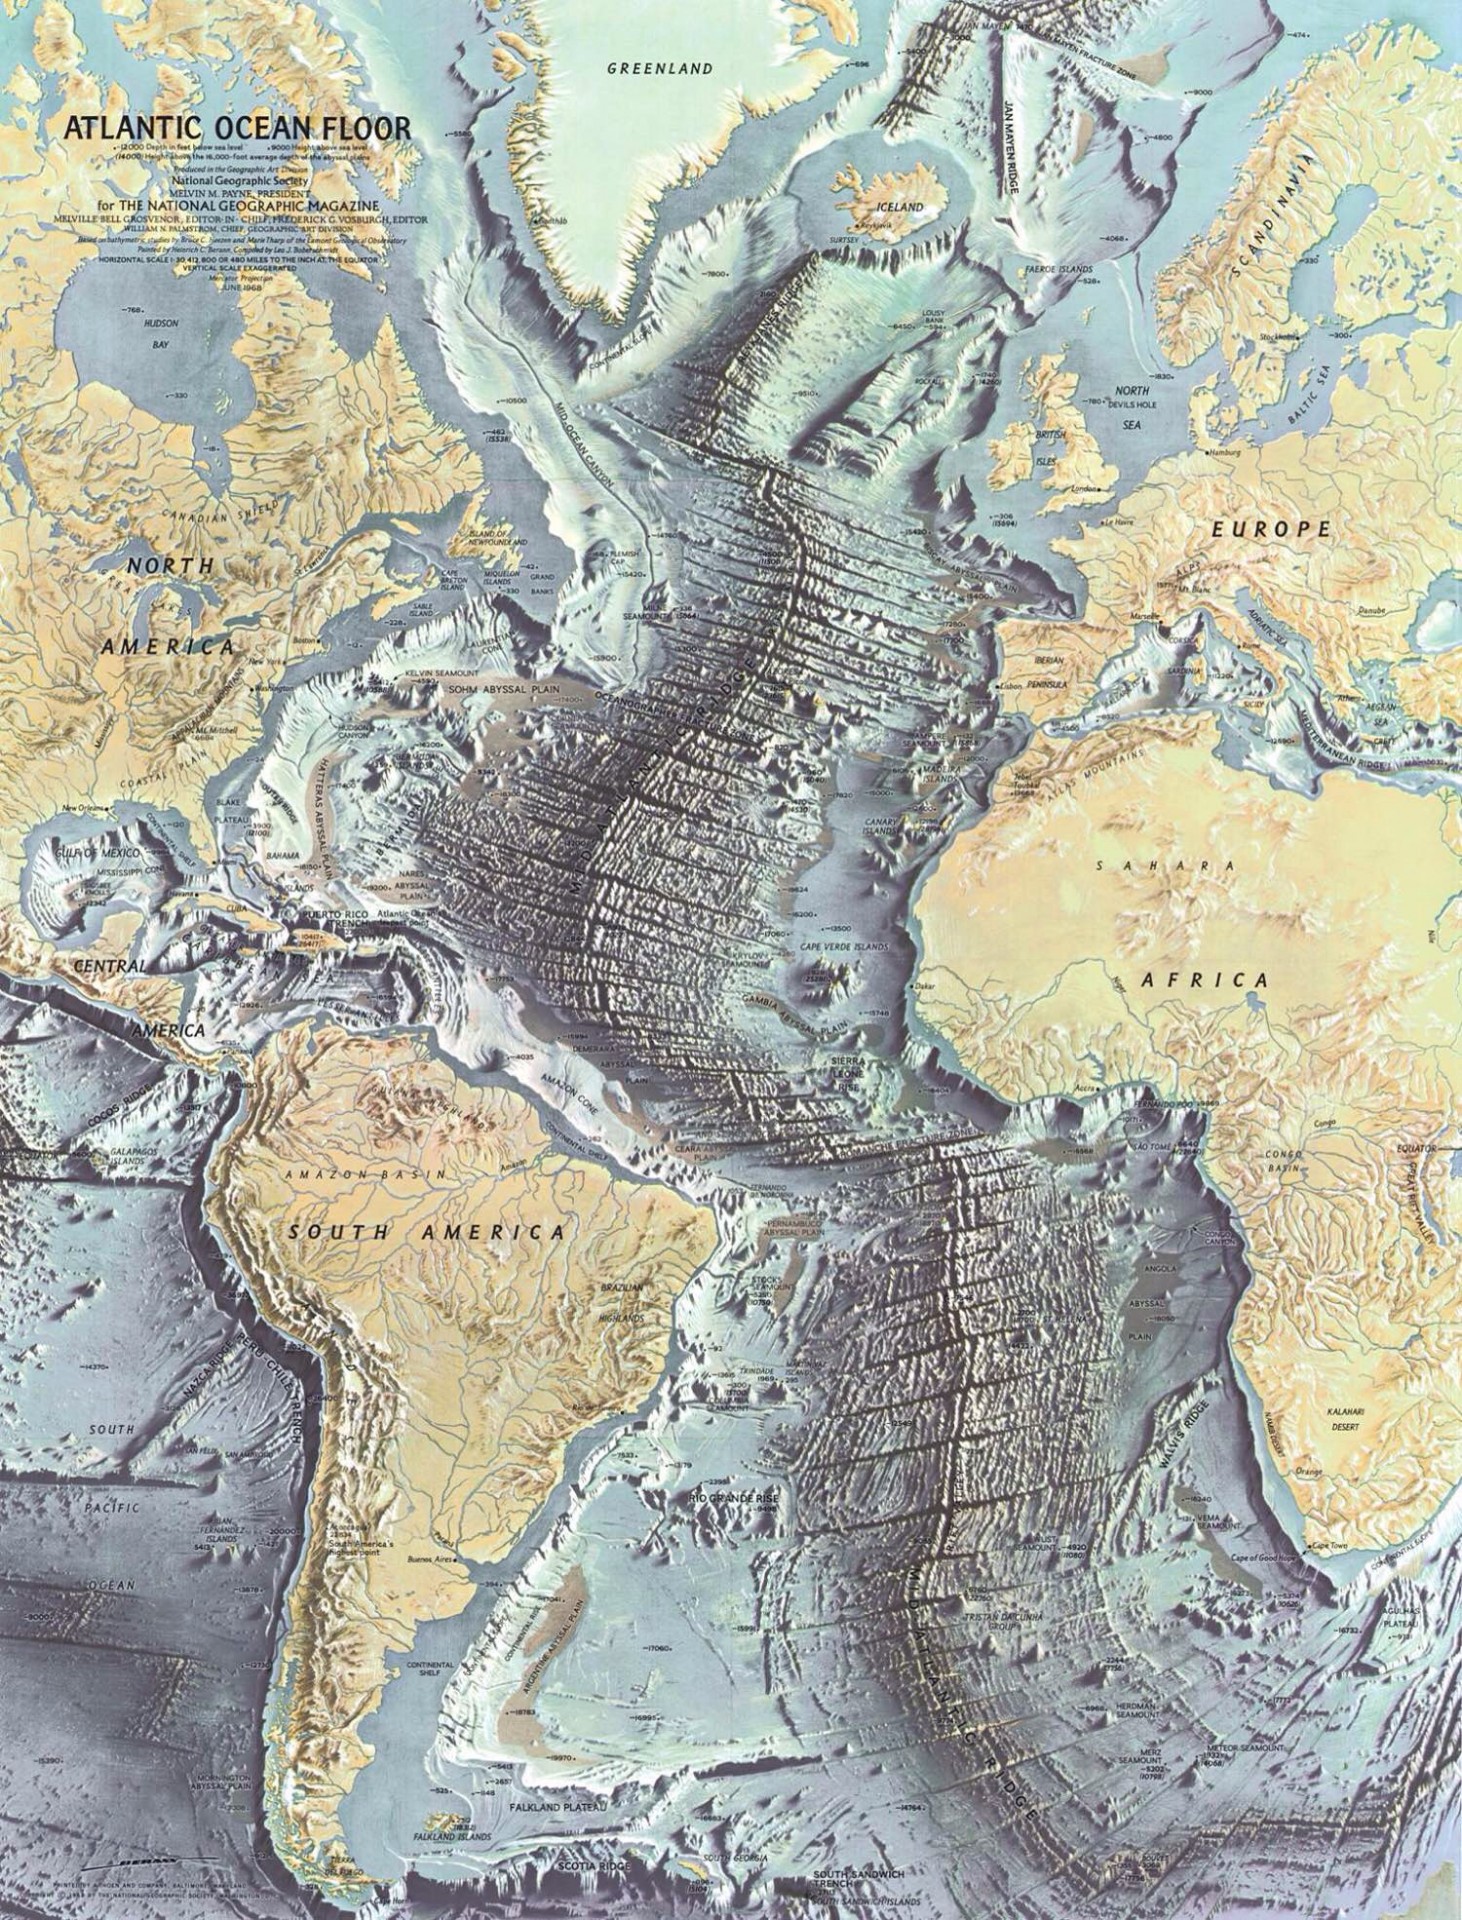 1968 map of the Atlantic Ocean floor.